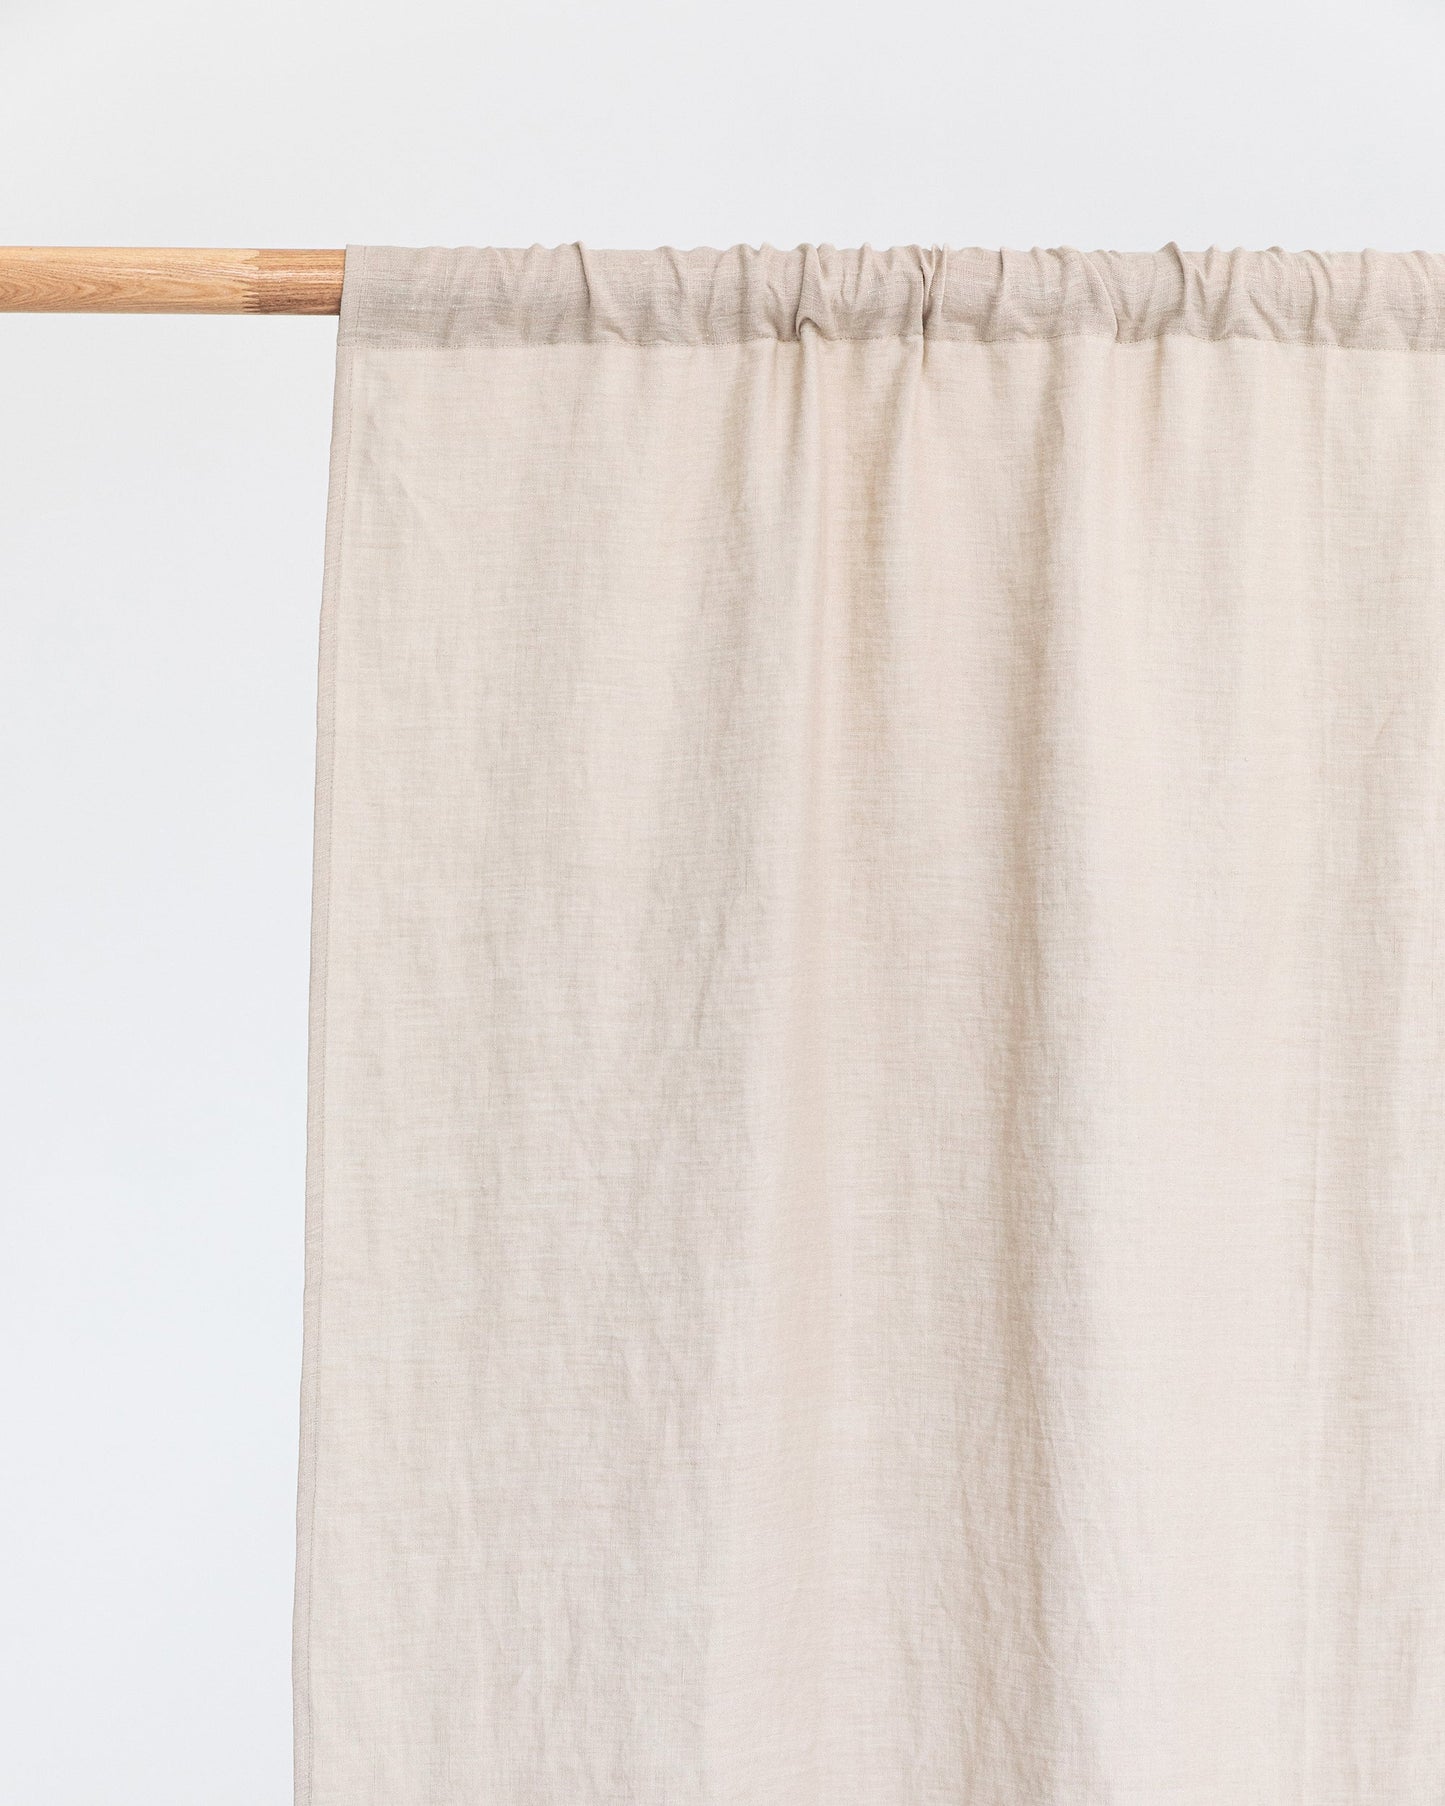 Rod pocket linen curtain panel (1 pcs) in Natural linen - MagicLinen